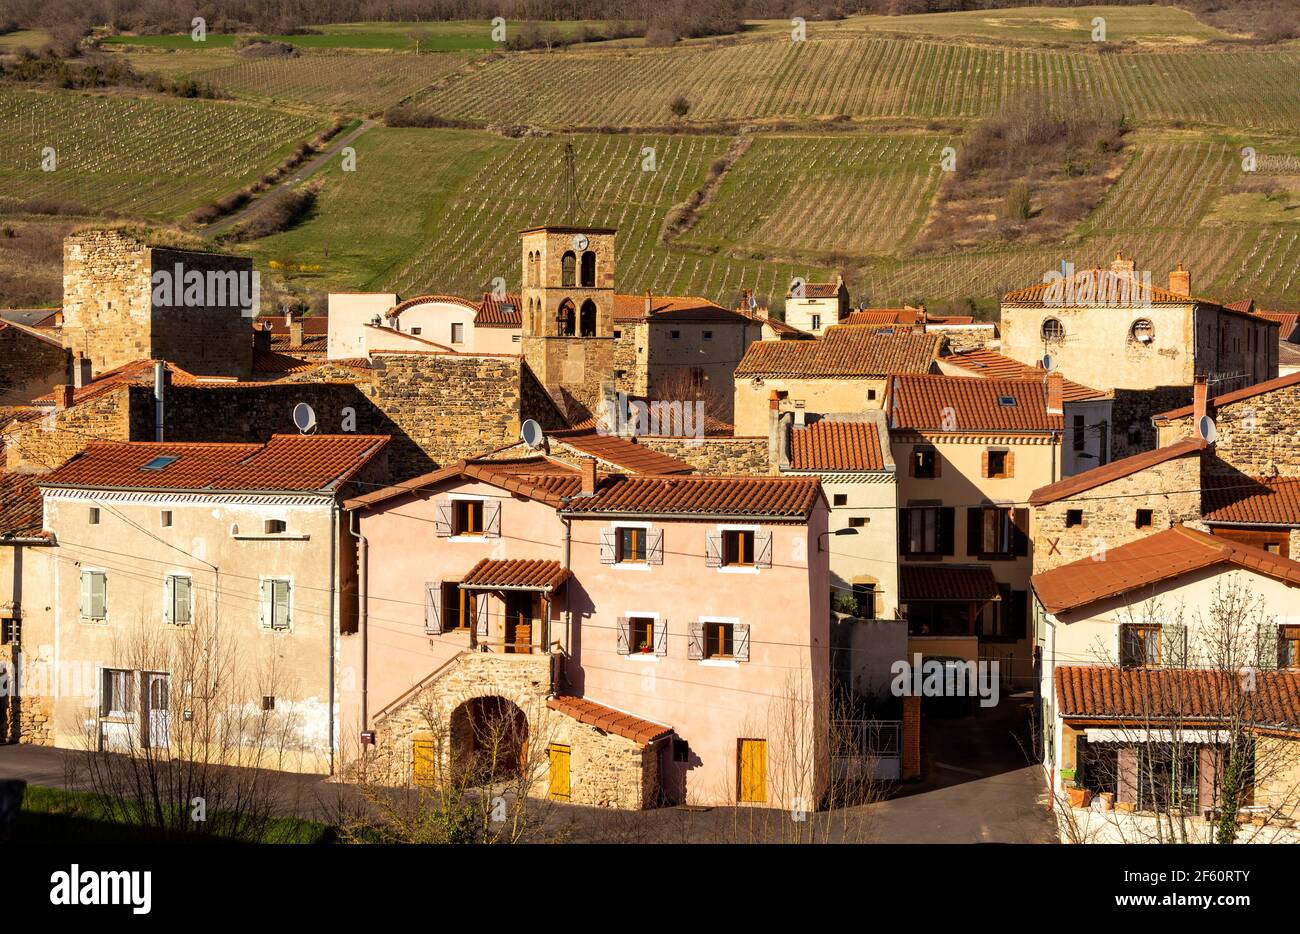 Winegrowing village of Boudes, Puy de Dome, Auvergne-Rhone-Alpes, France Stock Photo